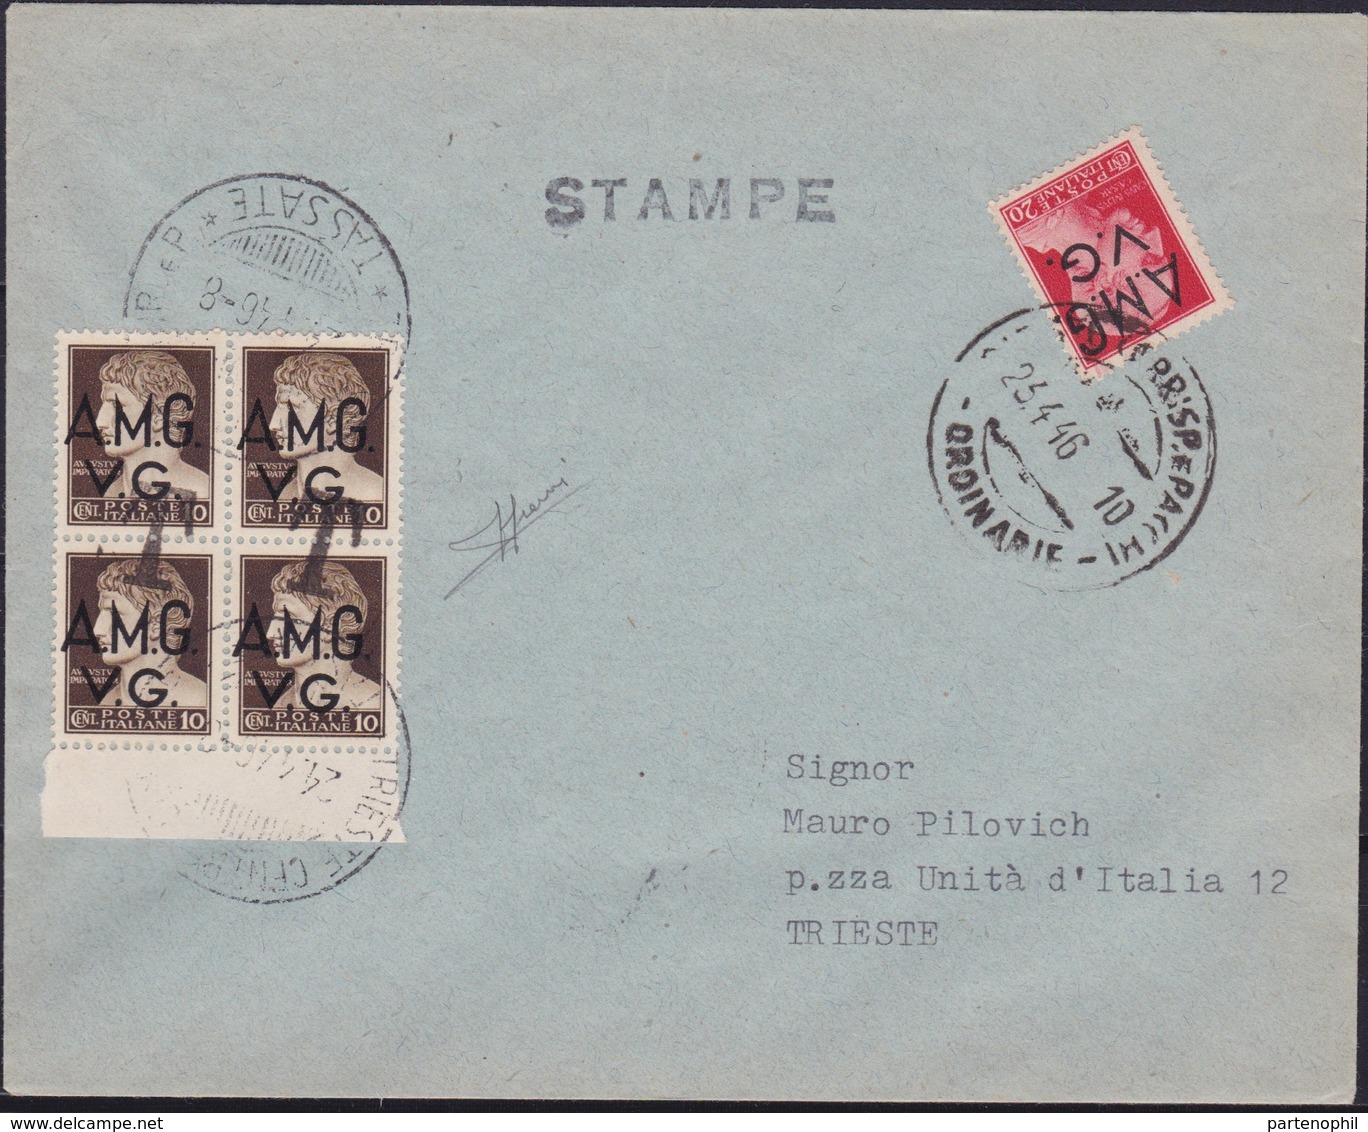 Venezia Giulia - 347 * Lettera Per Stampe Da Trieste Del 23.4.46 Per Città, Affrancata Con Imperiale Soprastampati A.M.G - Marcofilía